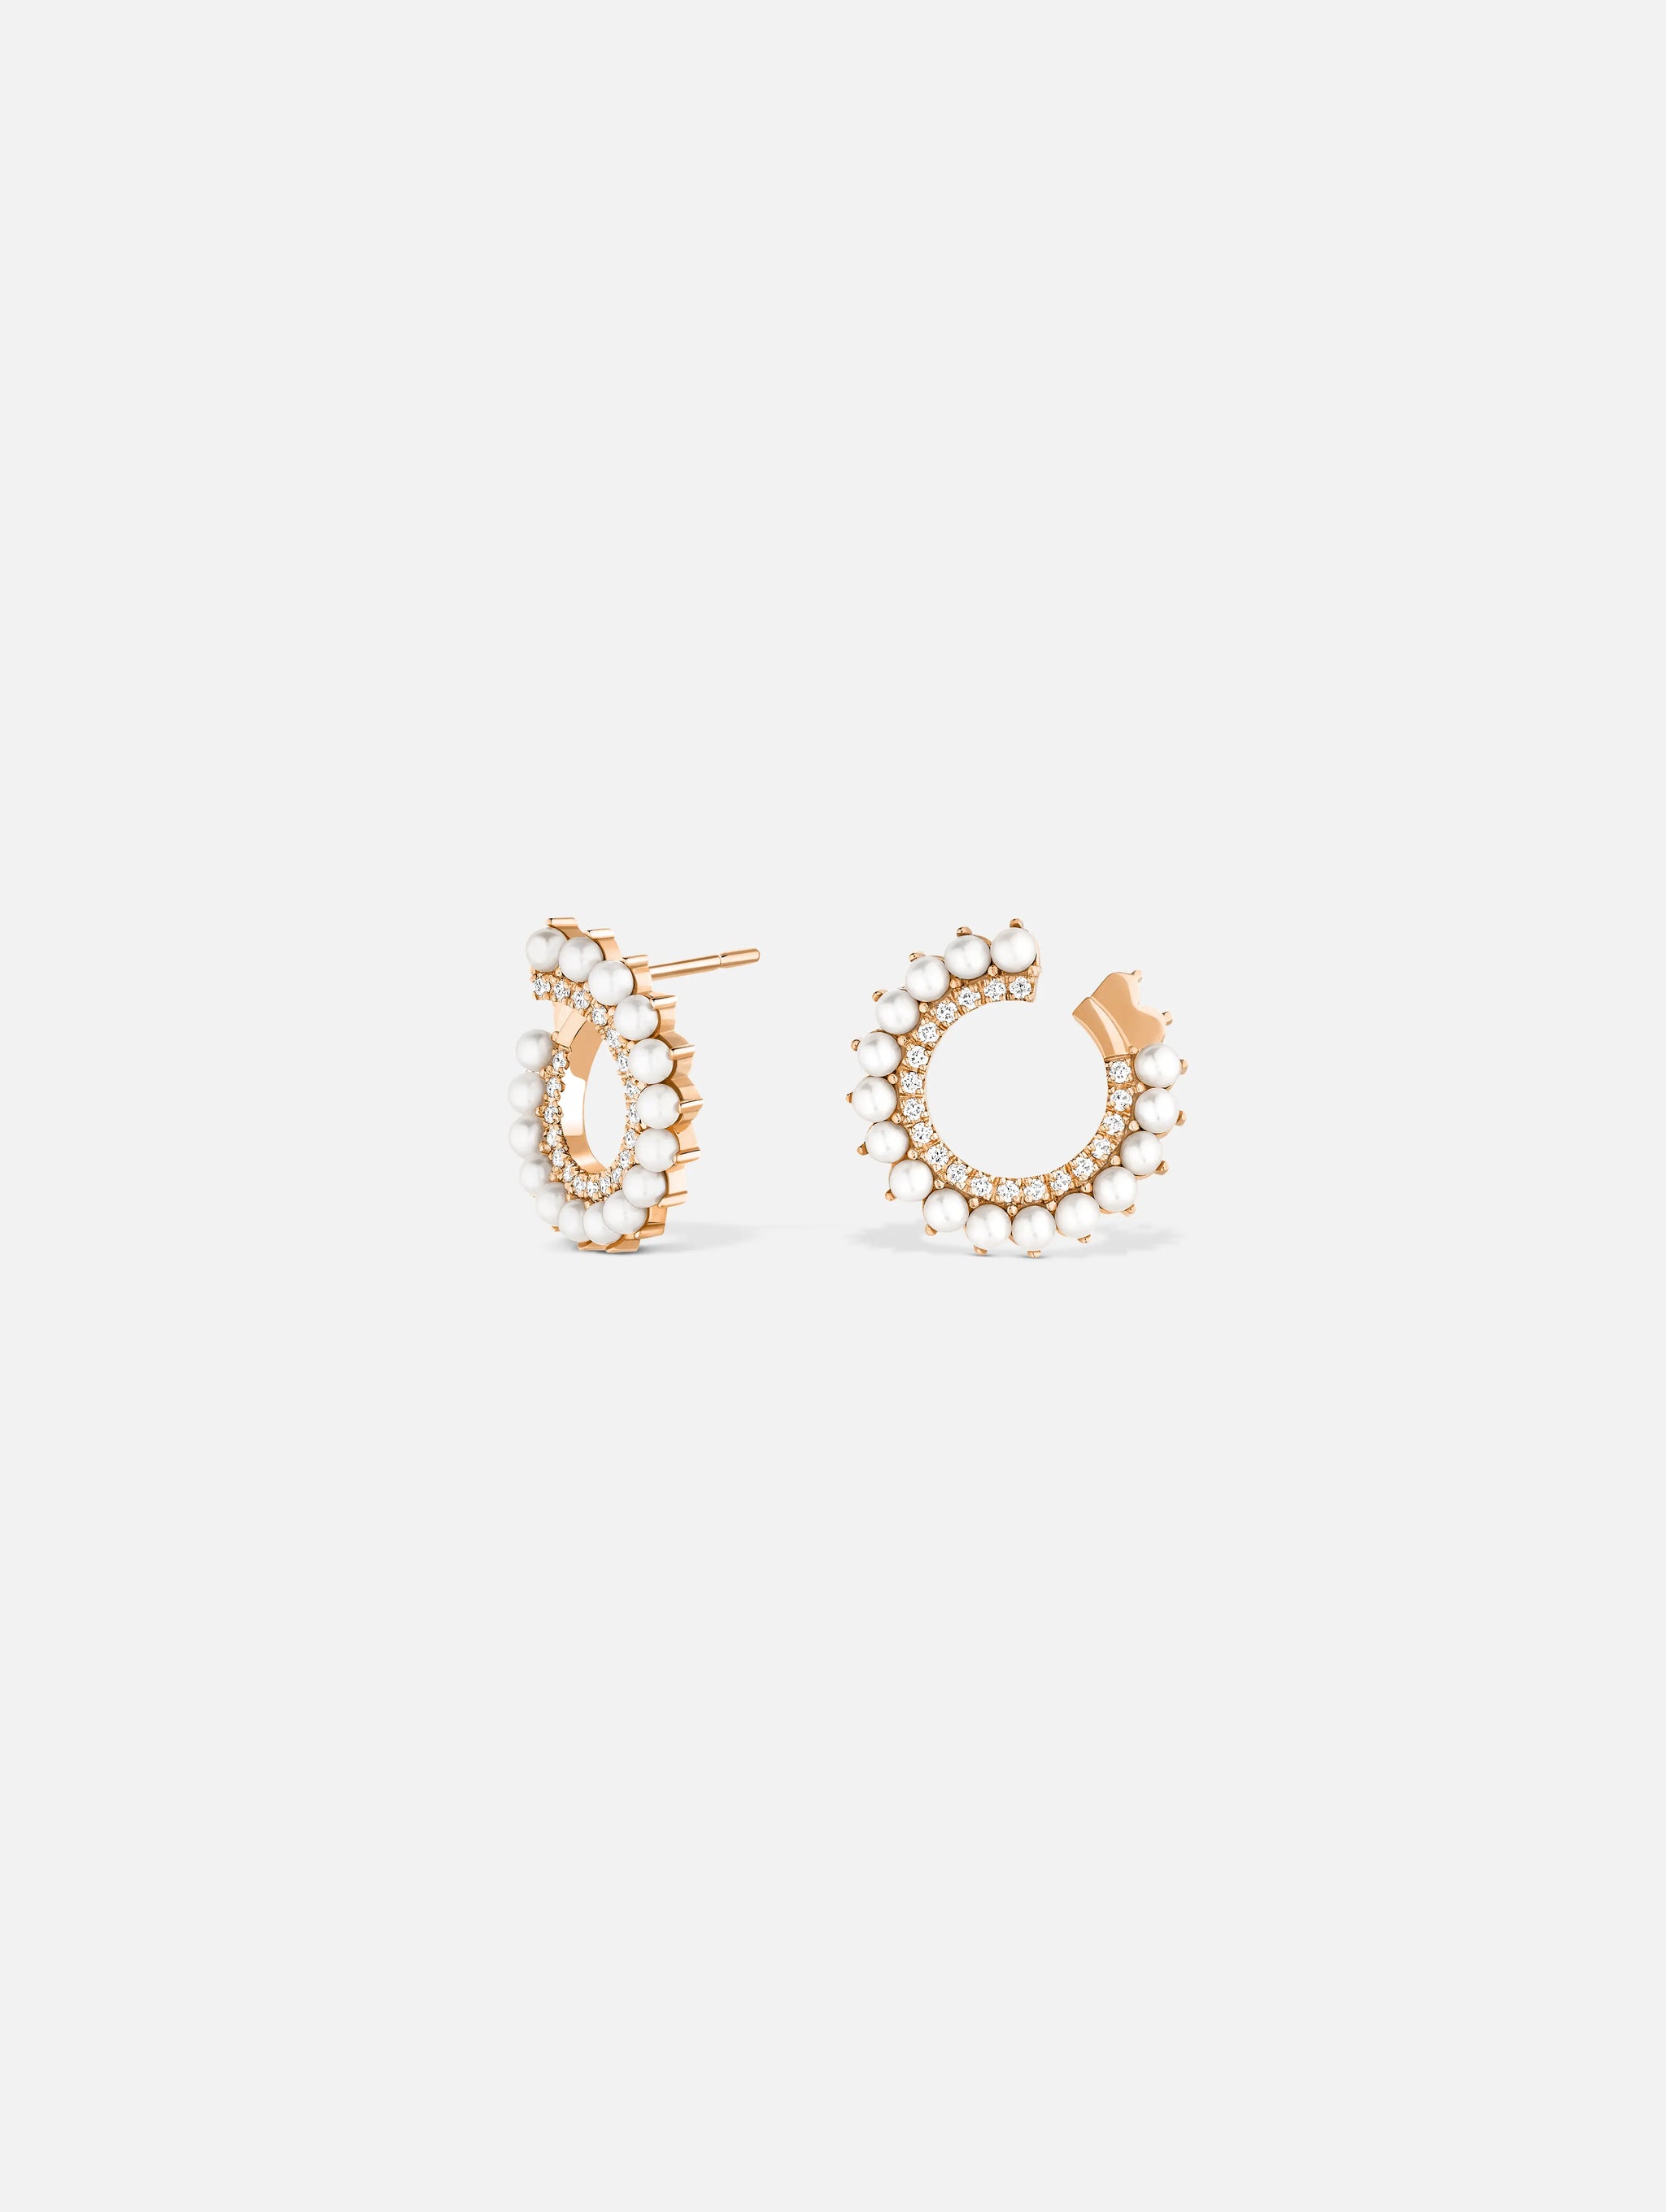 Boucles d'oreilles Vendôme Perle en Or Rose - 1 - Nouvel Heritage